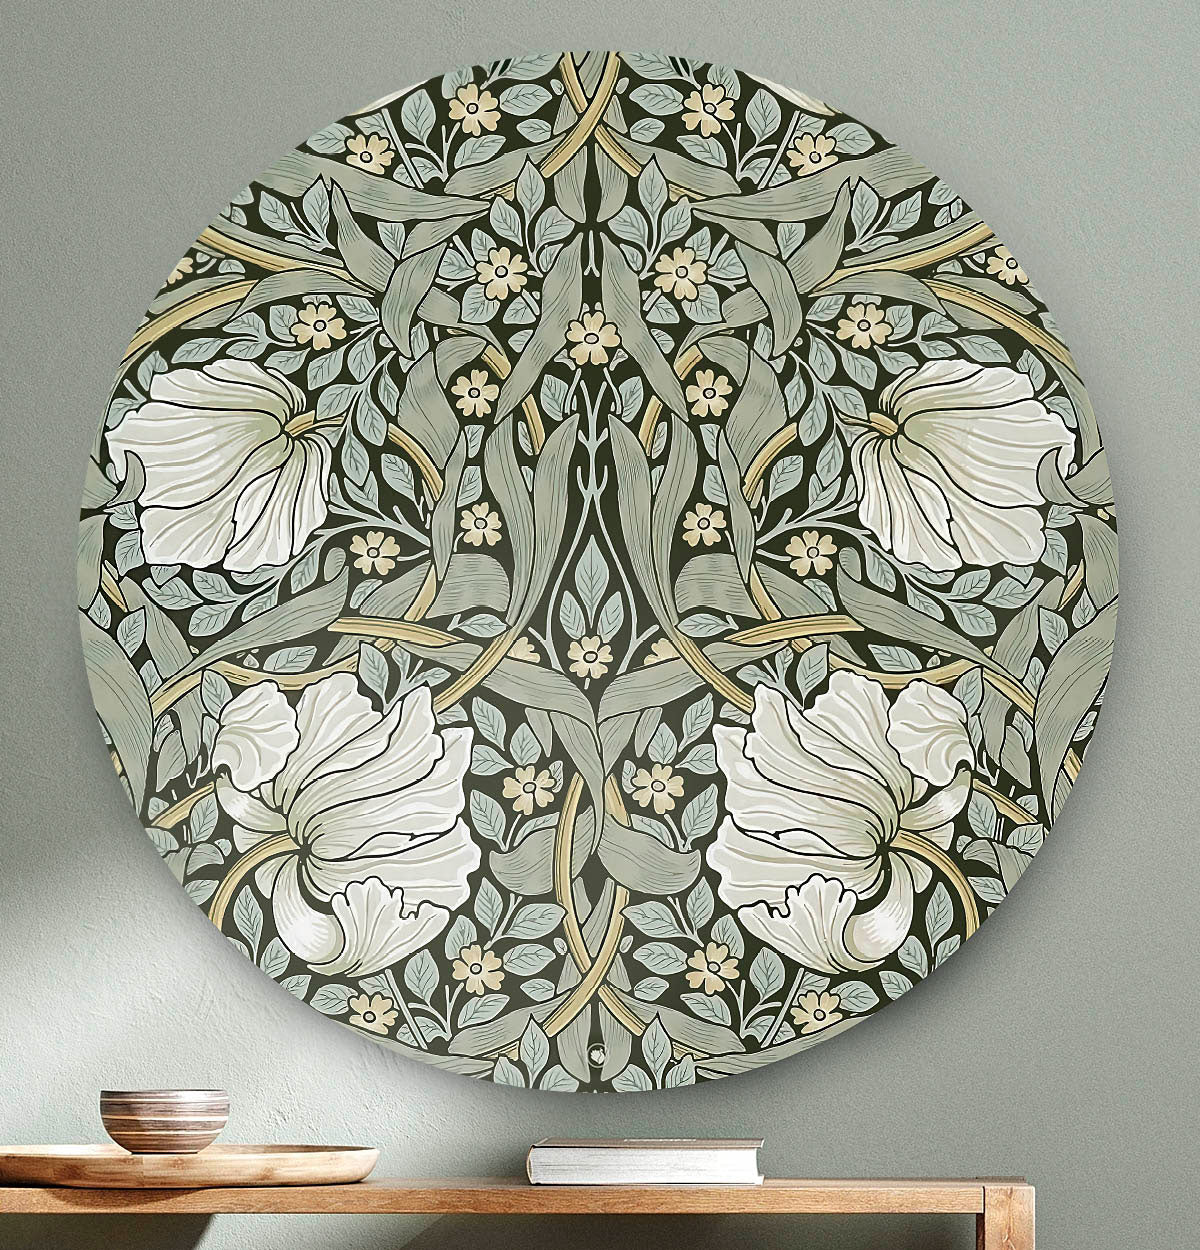 Wandcirkel met een groen patroon met witte bloemen tegen een lichte muur en een houten tafel